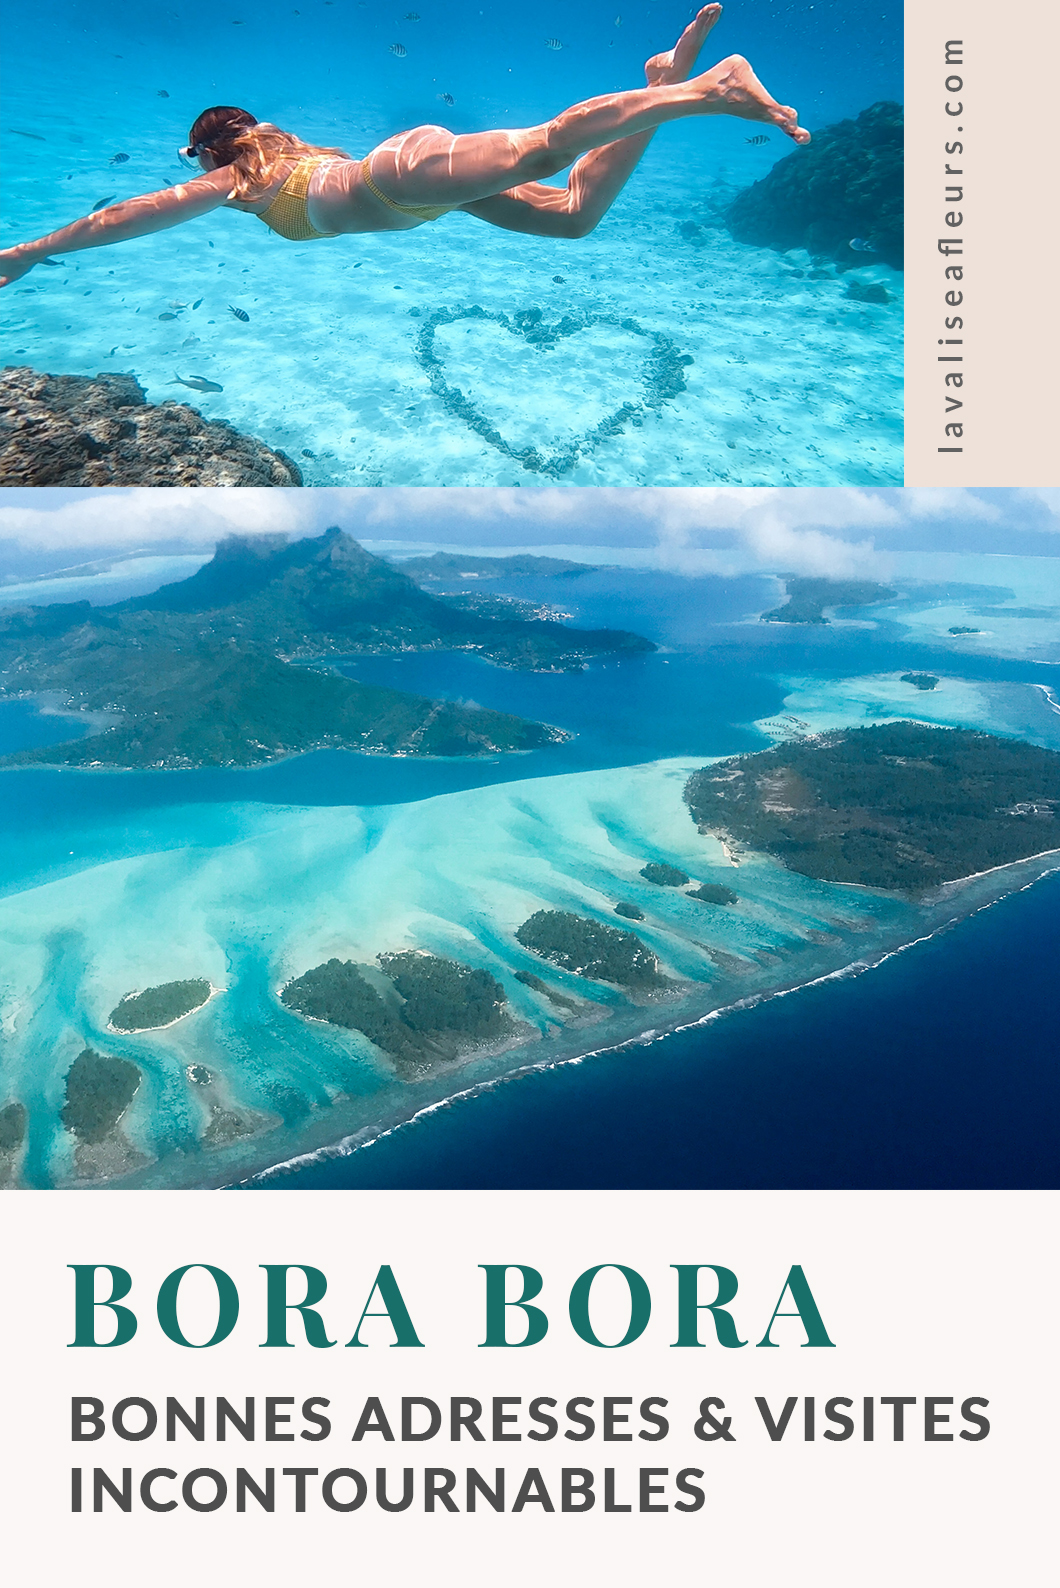 Bonnes adresses et visites incontournables à Bora Bora